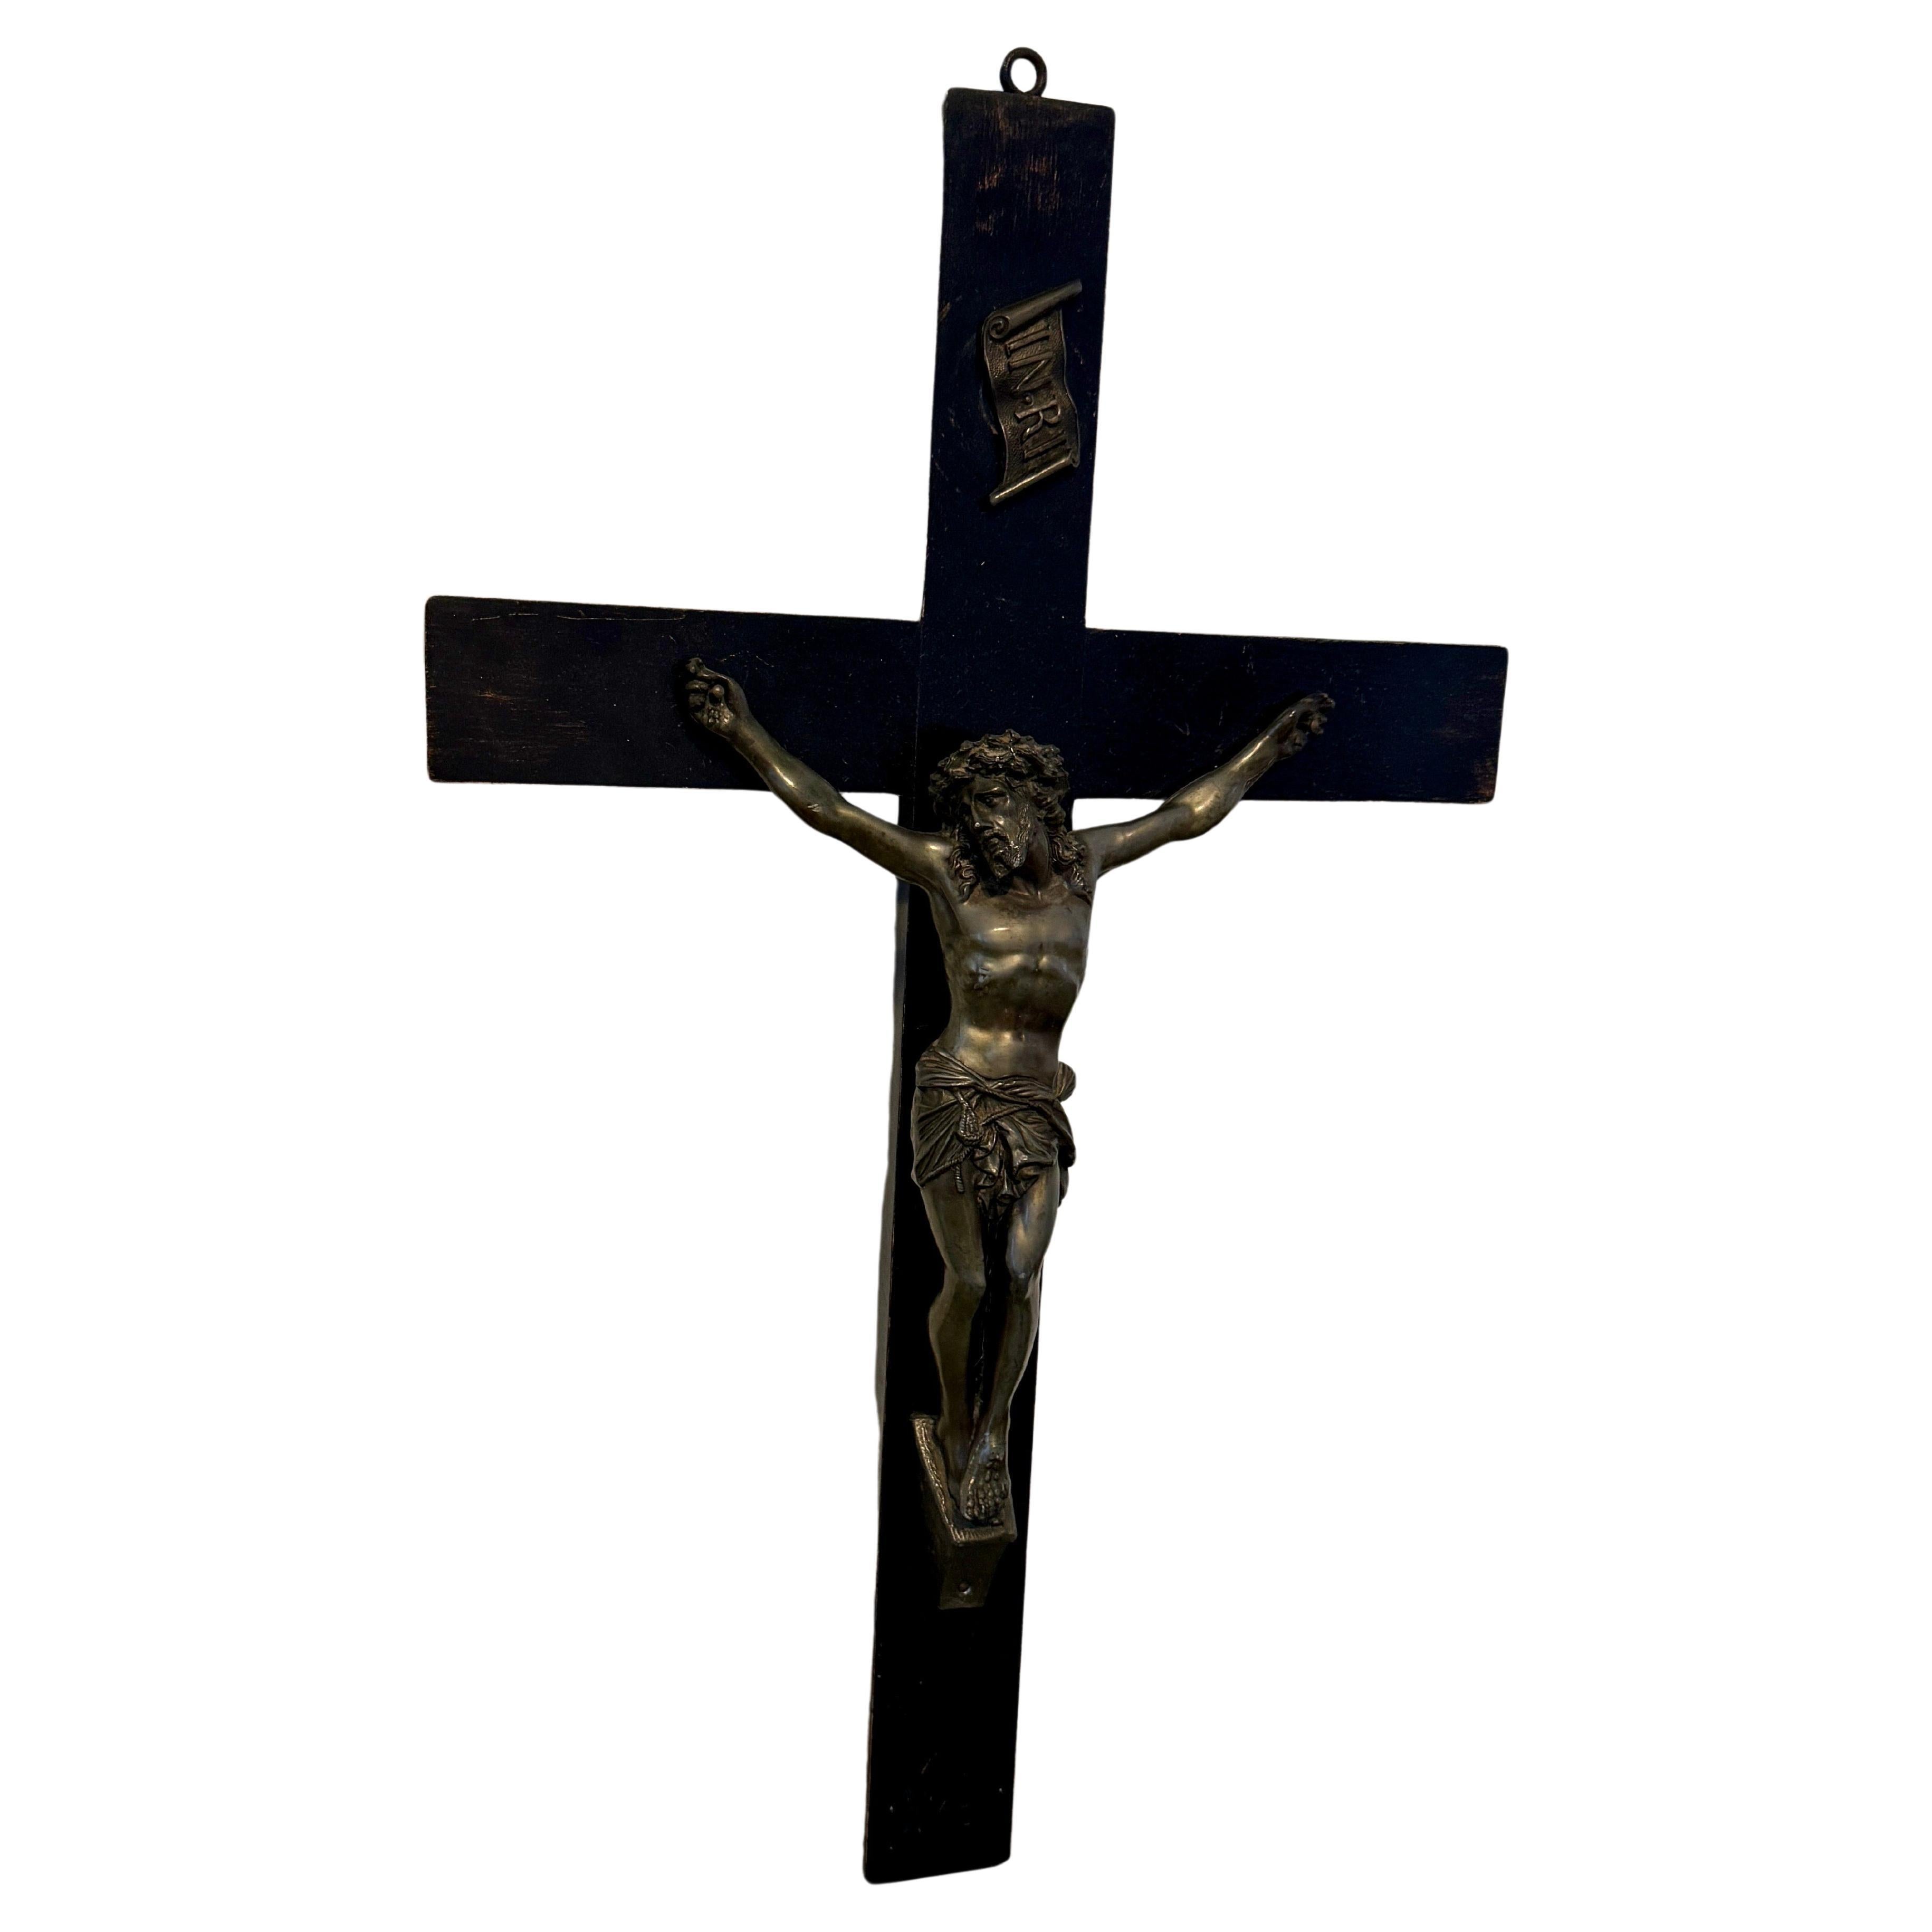 Jésus en bronze sur un crucifix en bois sculpté, début des années 1900 
Ce crucifix en bois serait certainement un ajout merveilleux à toute collection d'œuvres d'art religieuses.